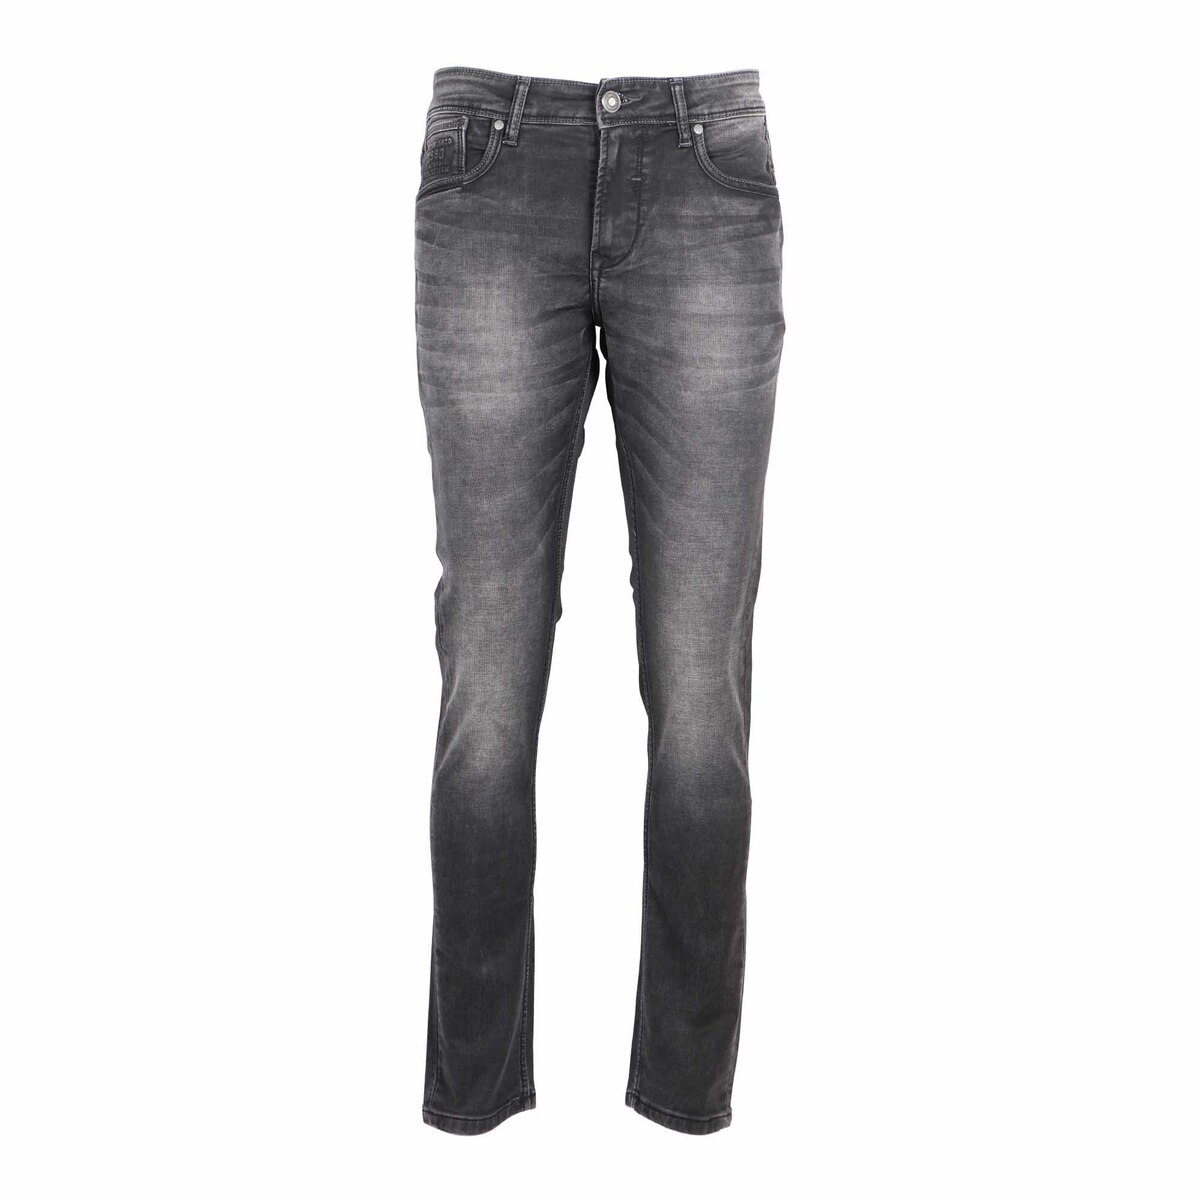 Sunnex Men's Slim Fit Jeans WR-21504 Dark Brown 34